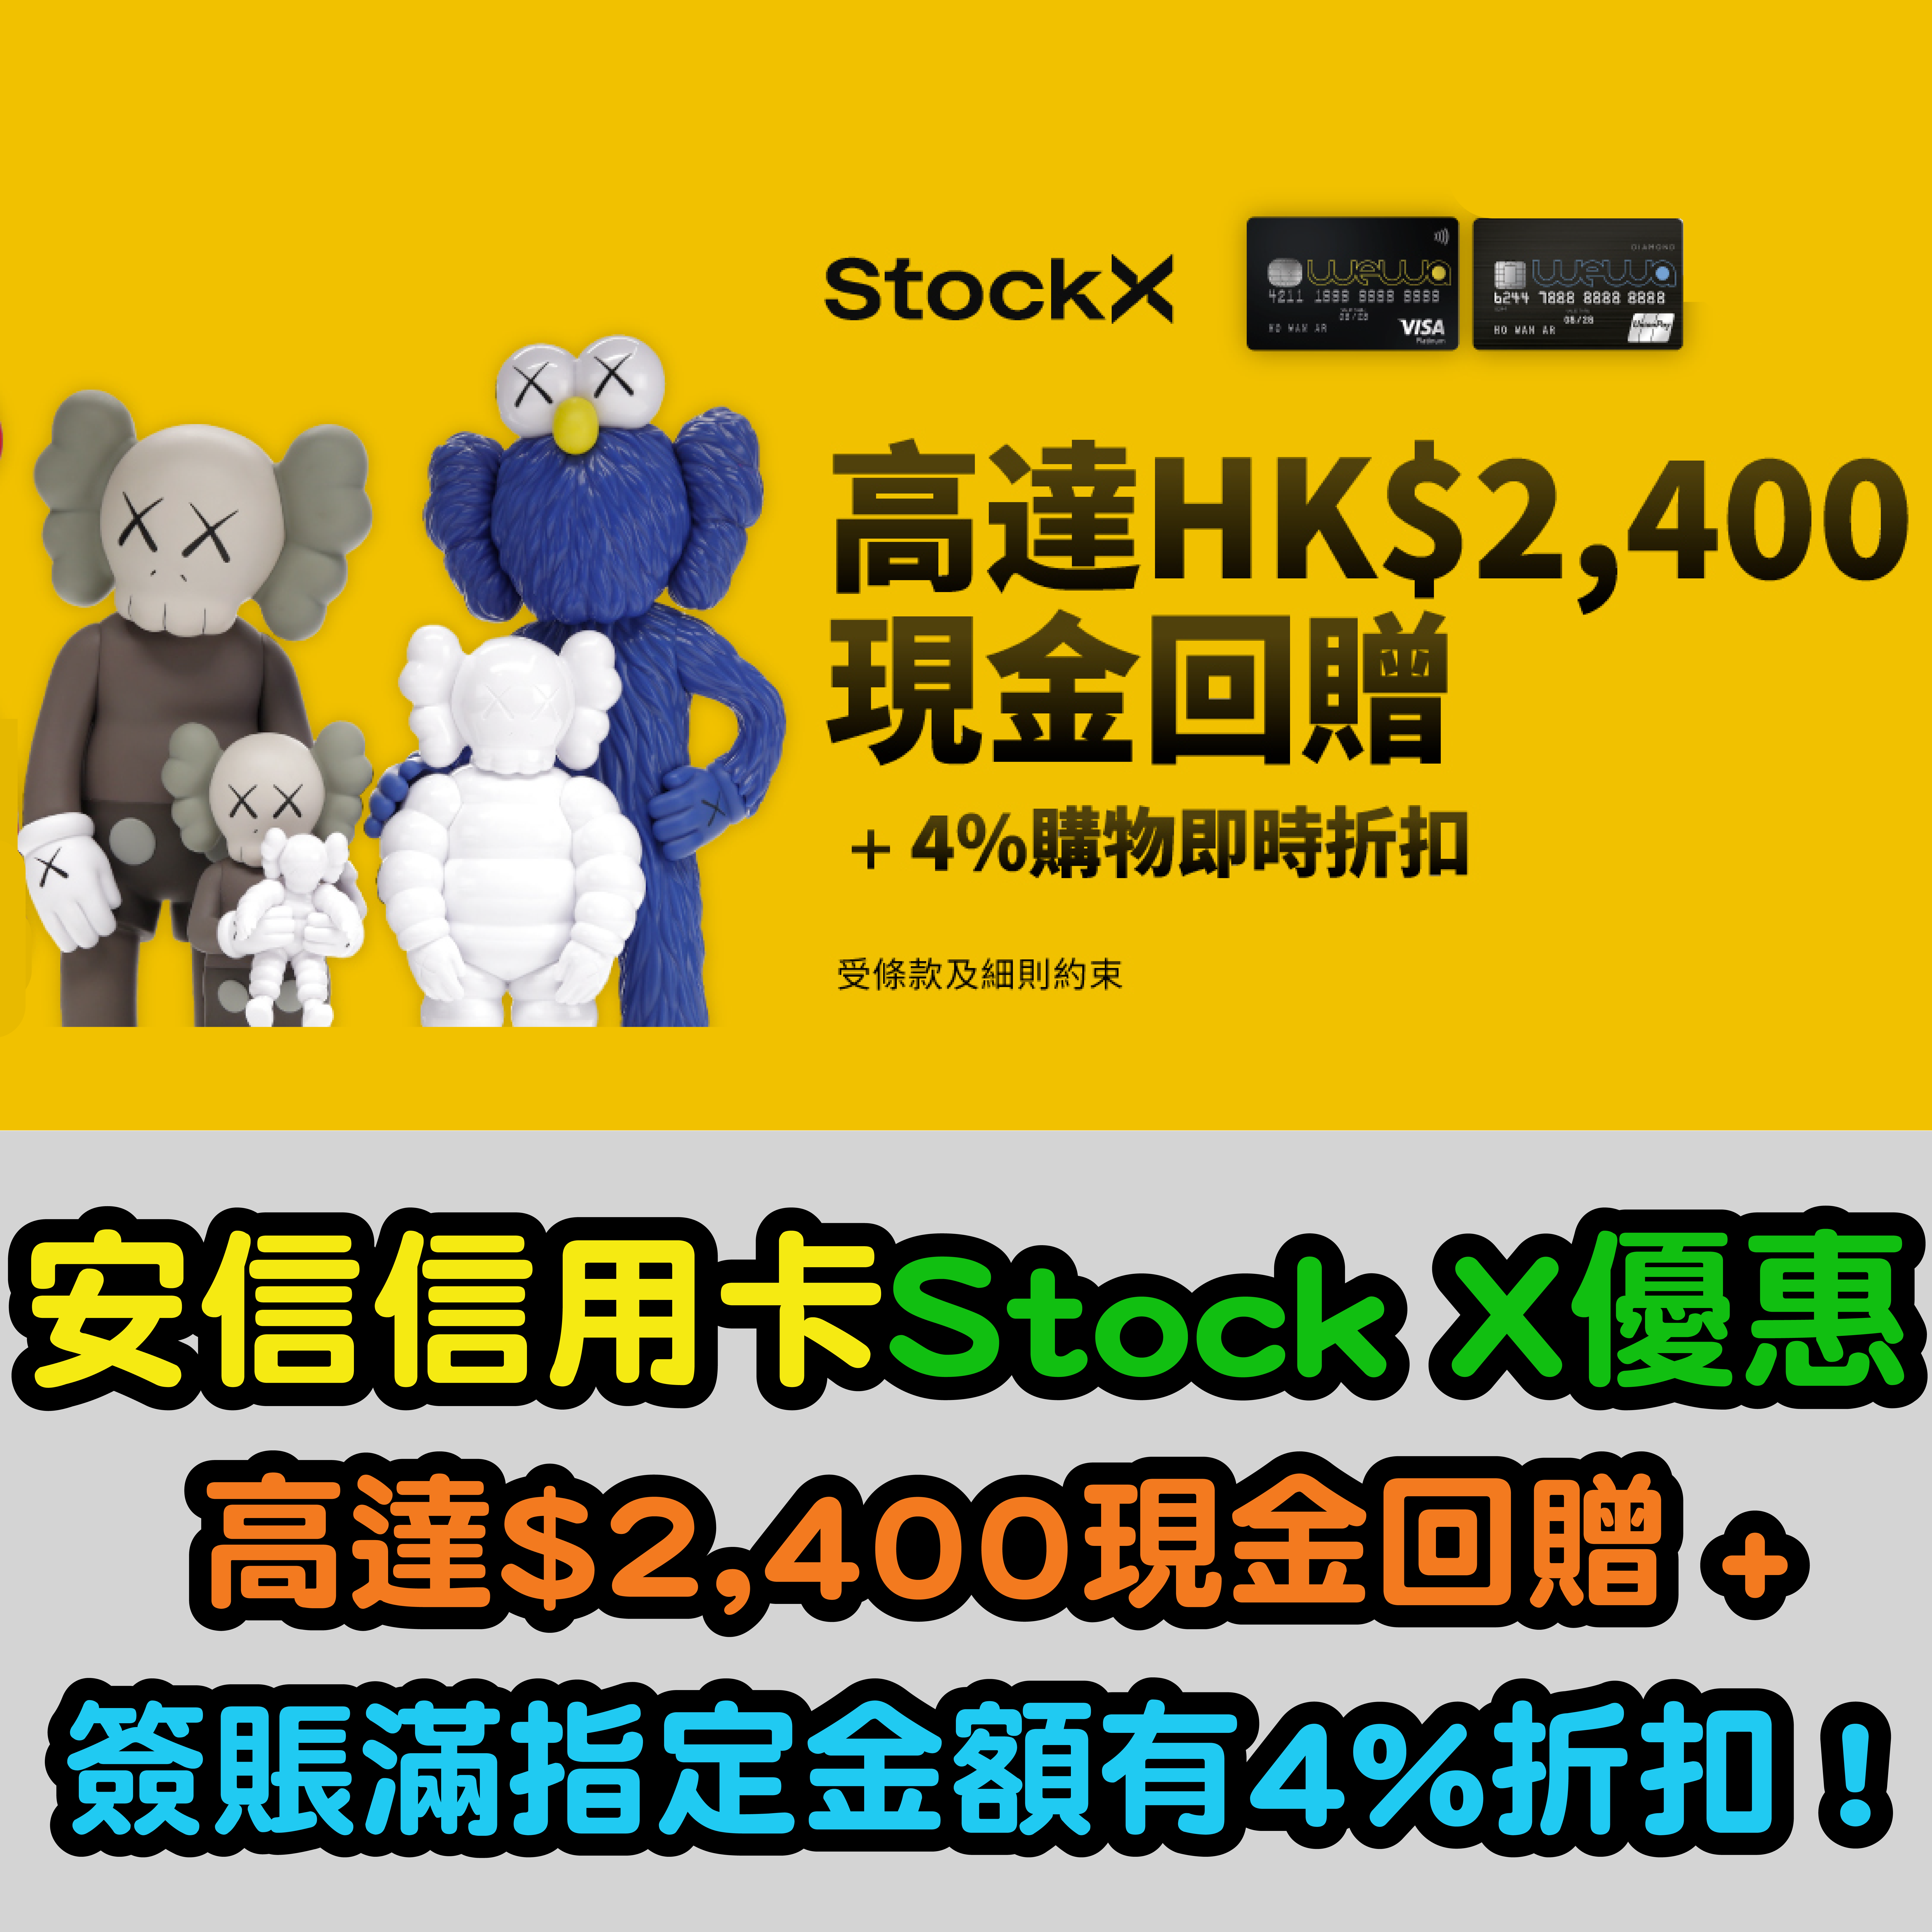 Stockx-06